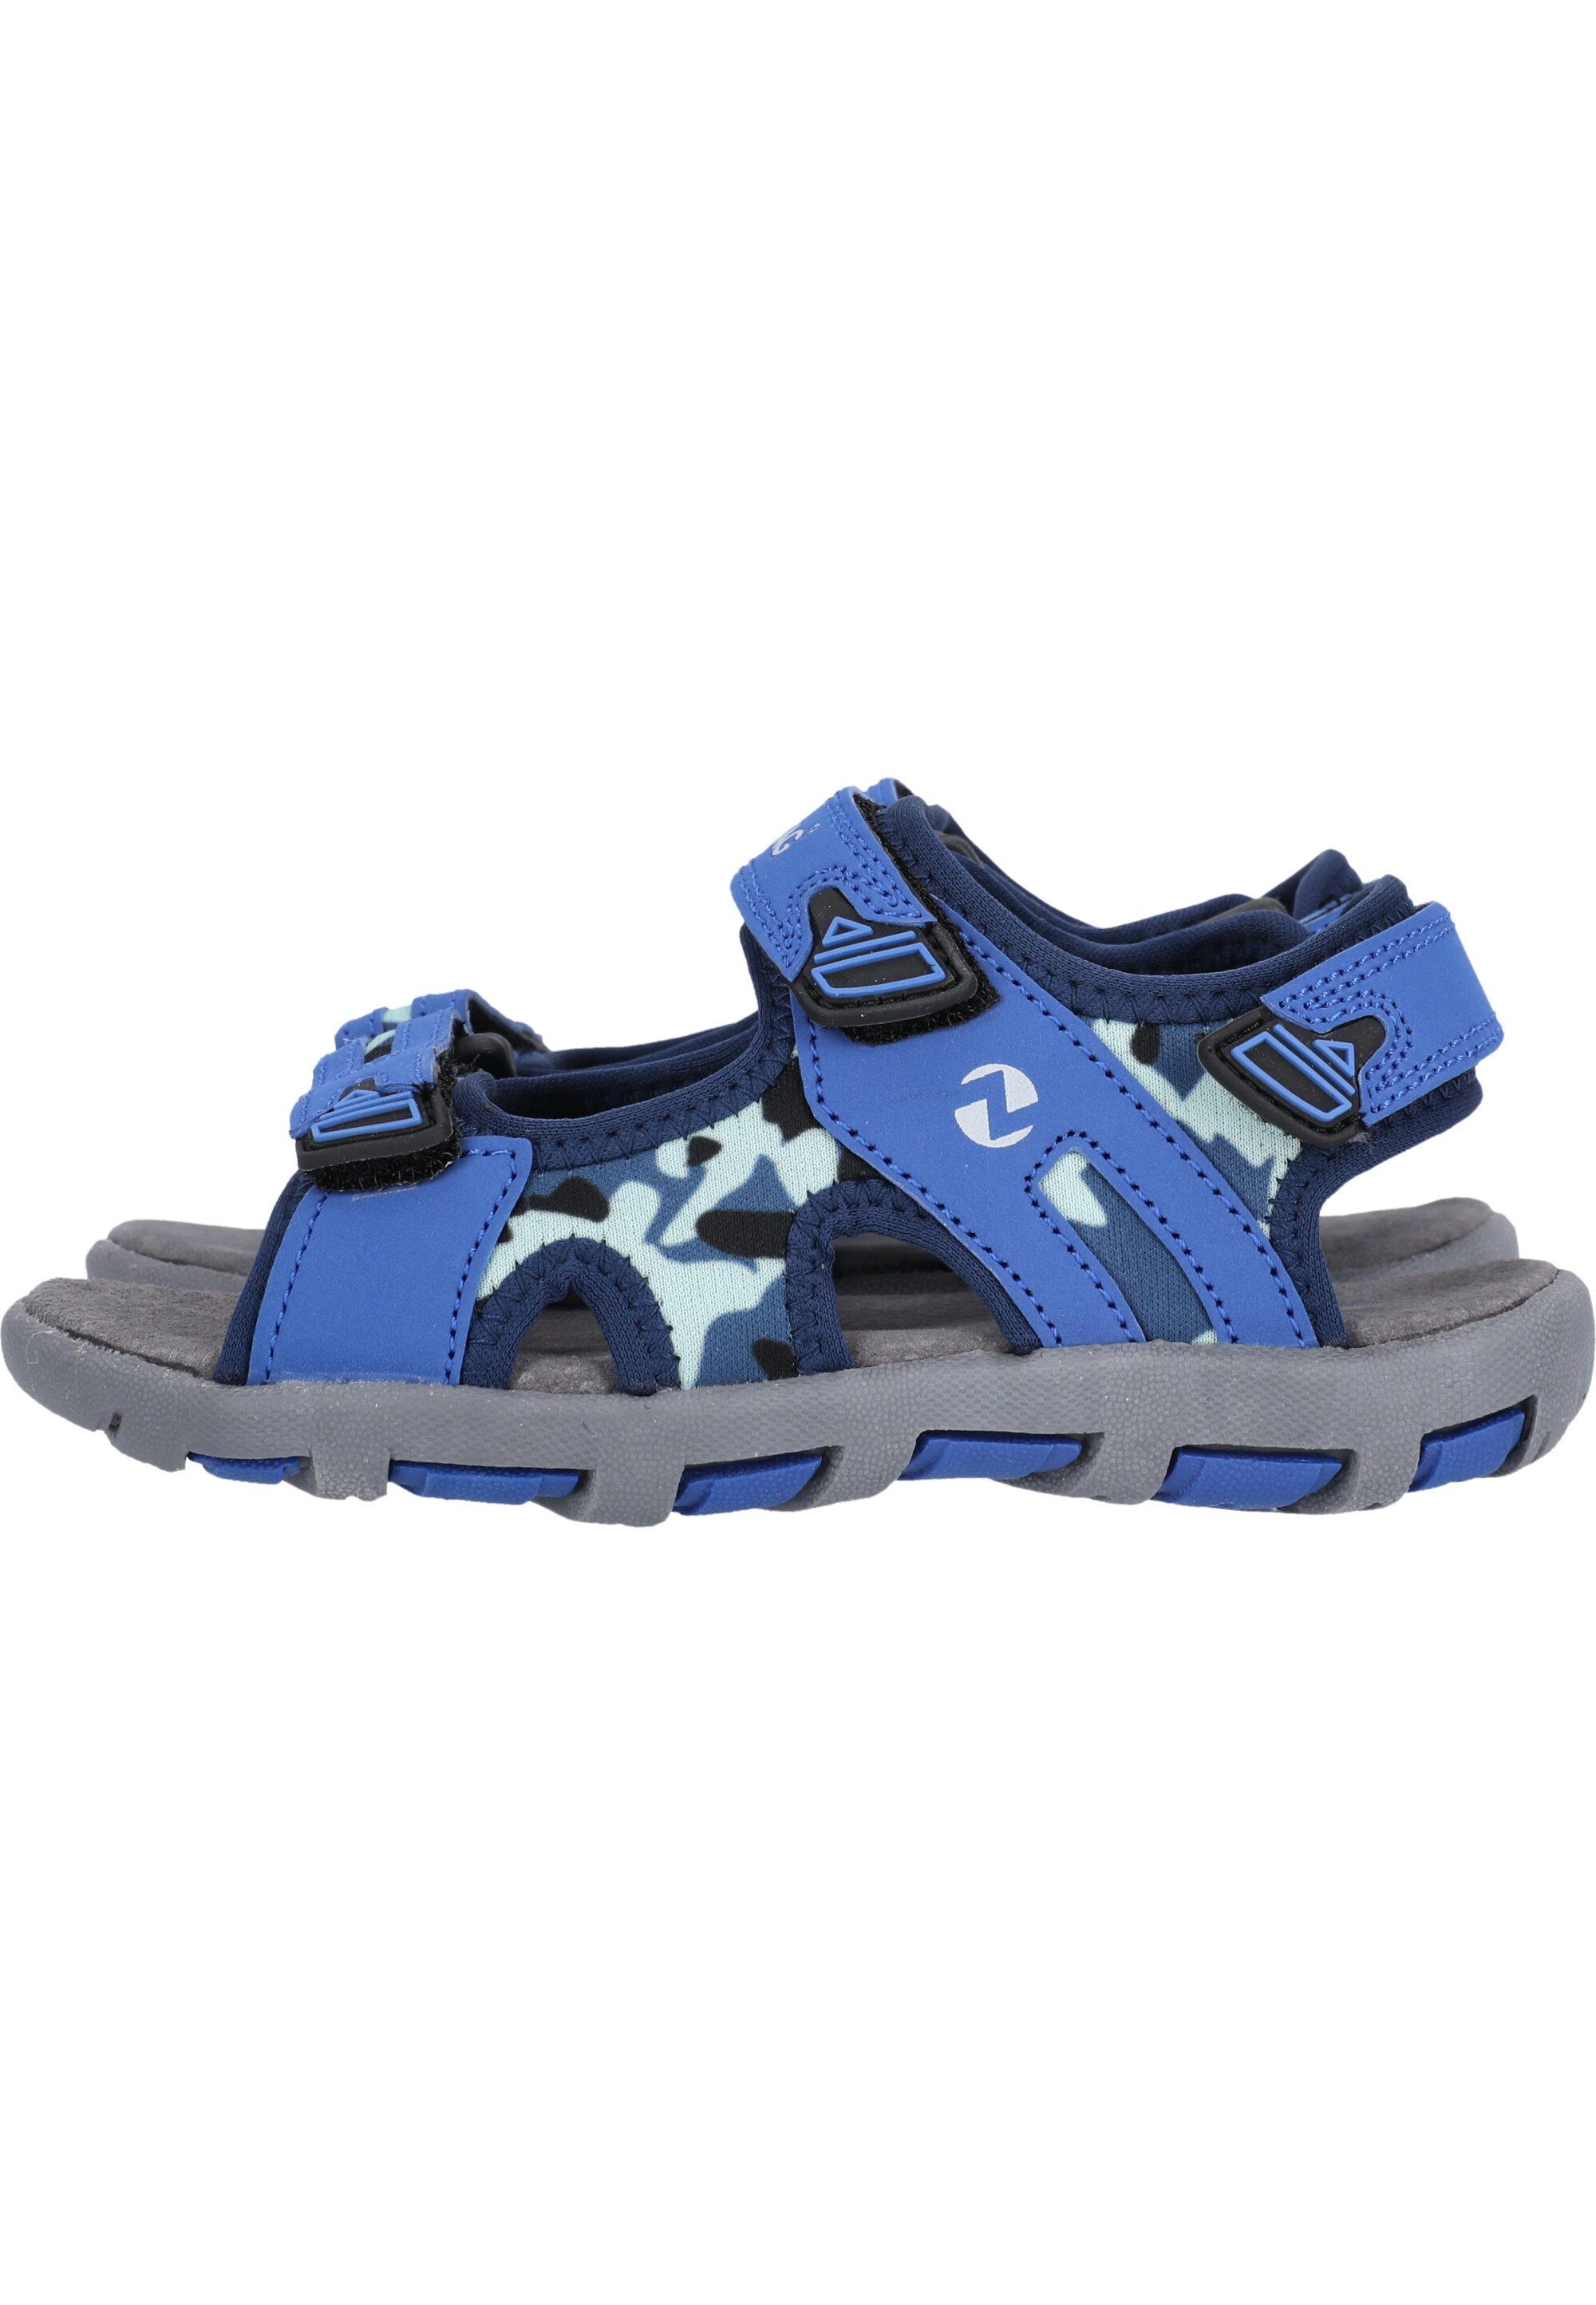 ZIGZAG Tanaka Sandale mit Klettverschluss blau-blau praktischem